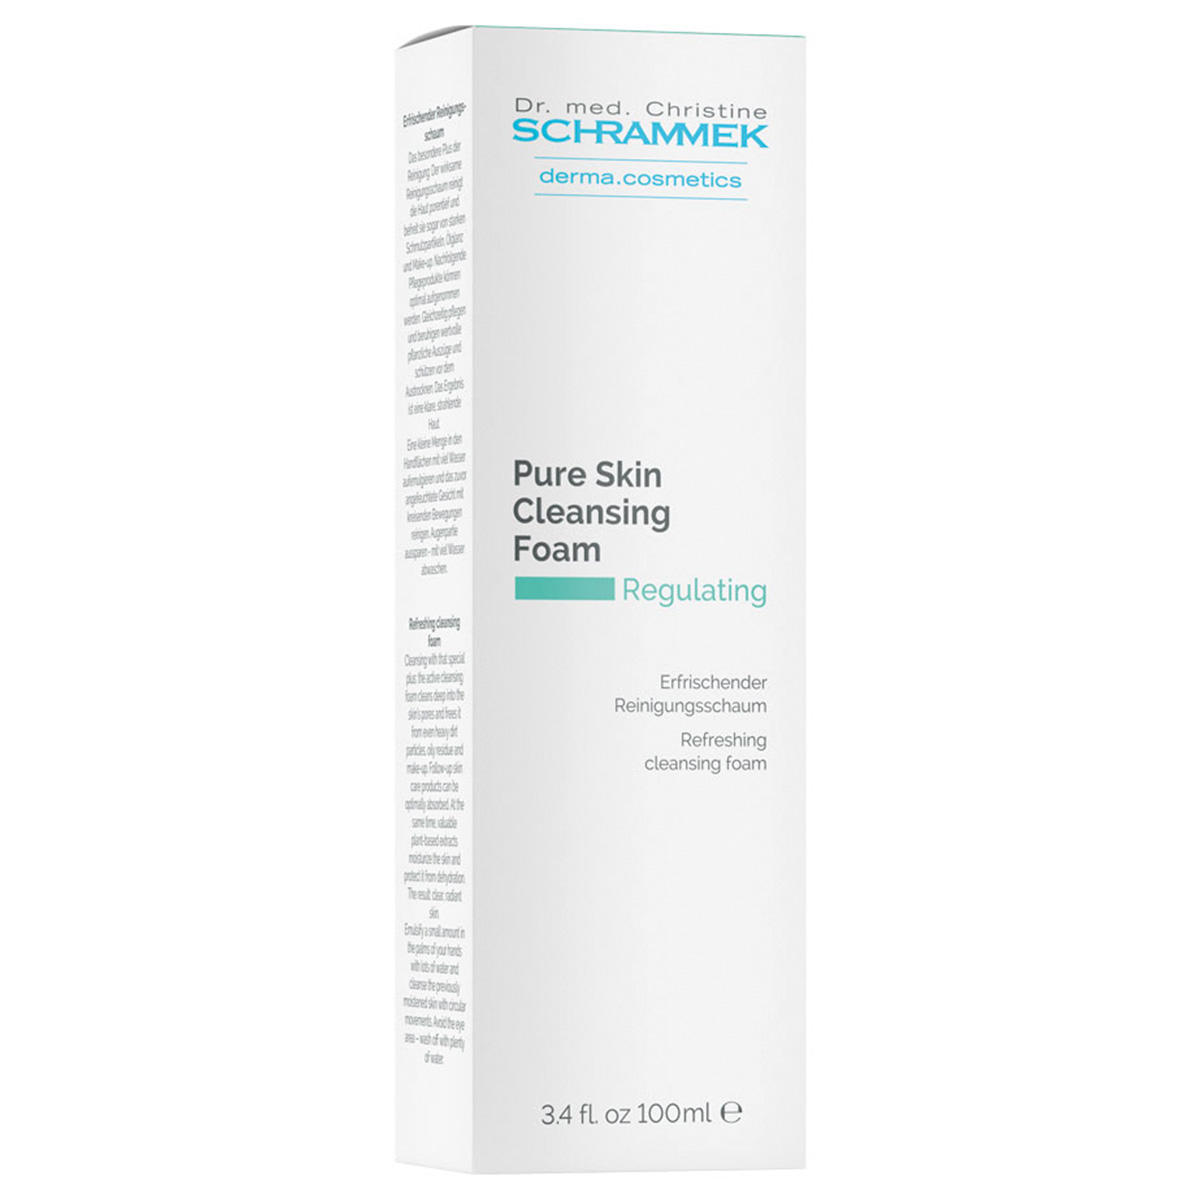 Dr. med. Christine SCHRAMMEK Regulating Pure Skin Cleansing Foam 100 ml - 2